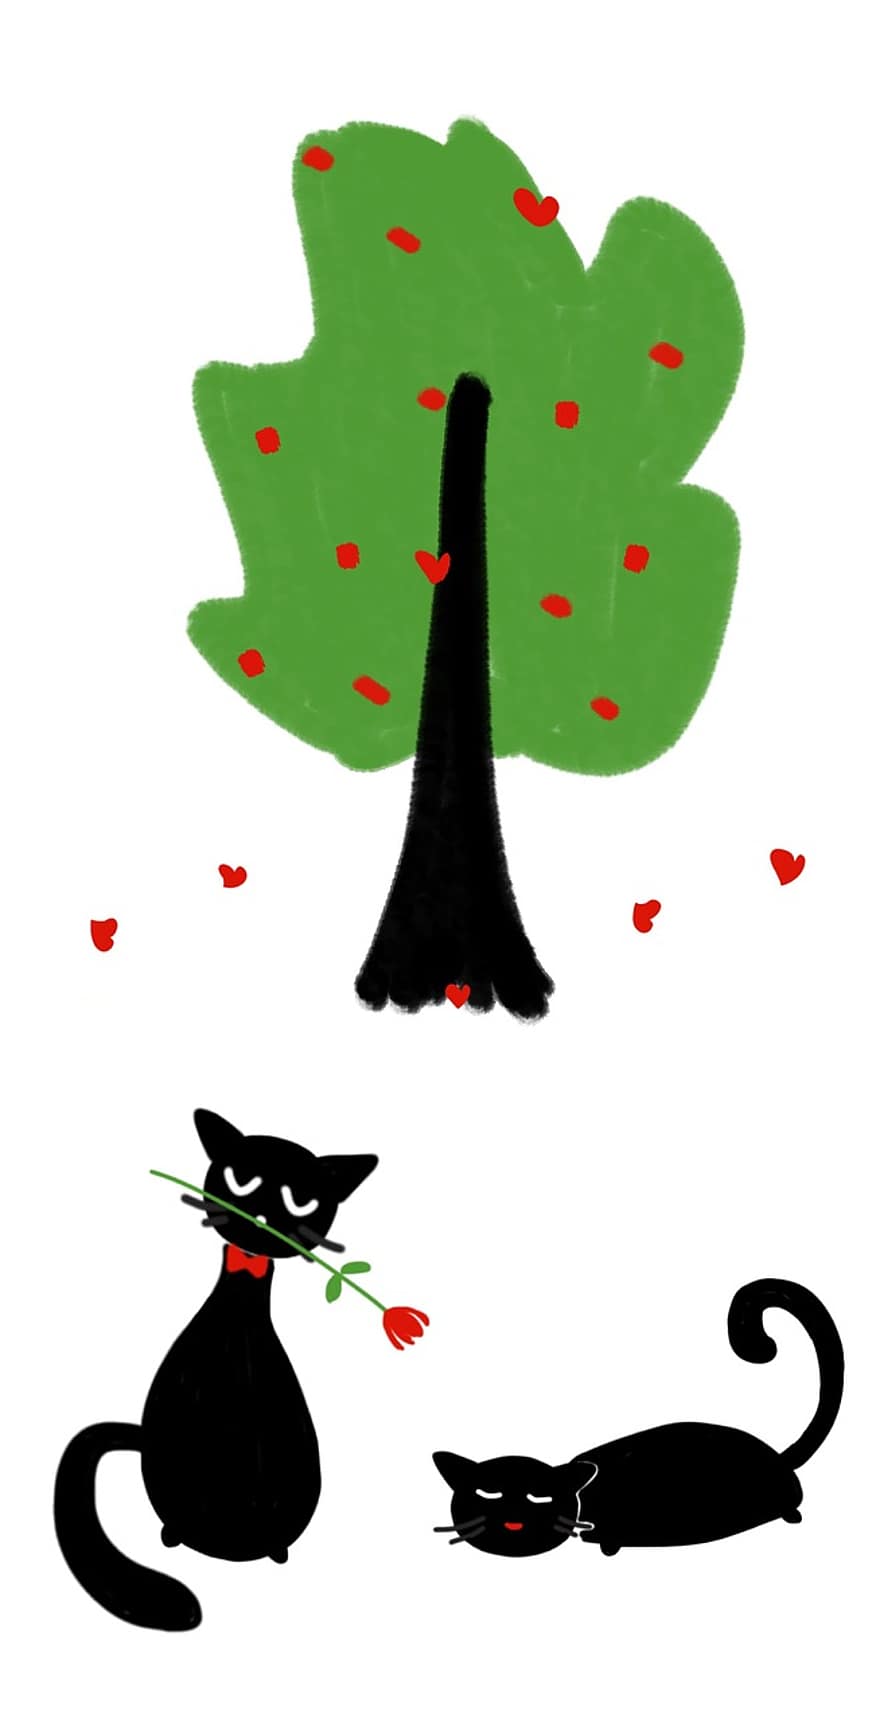 แมว, ต้นไม้, ความรัก, วันวาเลนไทน์, หัวใจ, ต้นไม้สีเขียว, แมวอินเลิฟ, แมวดำ, ดอกกุหลาบ, ดอกไม้, โรแมนติก